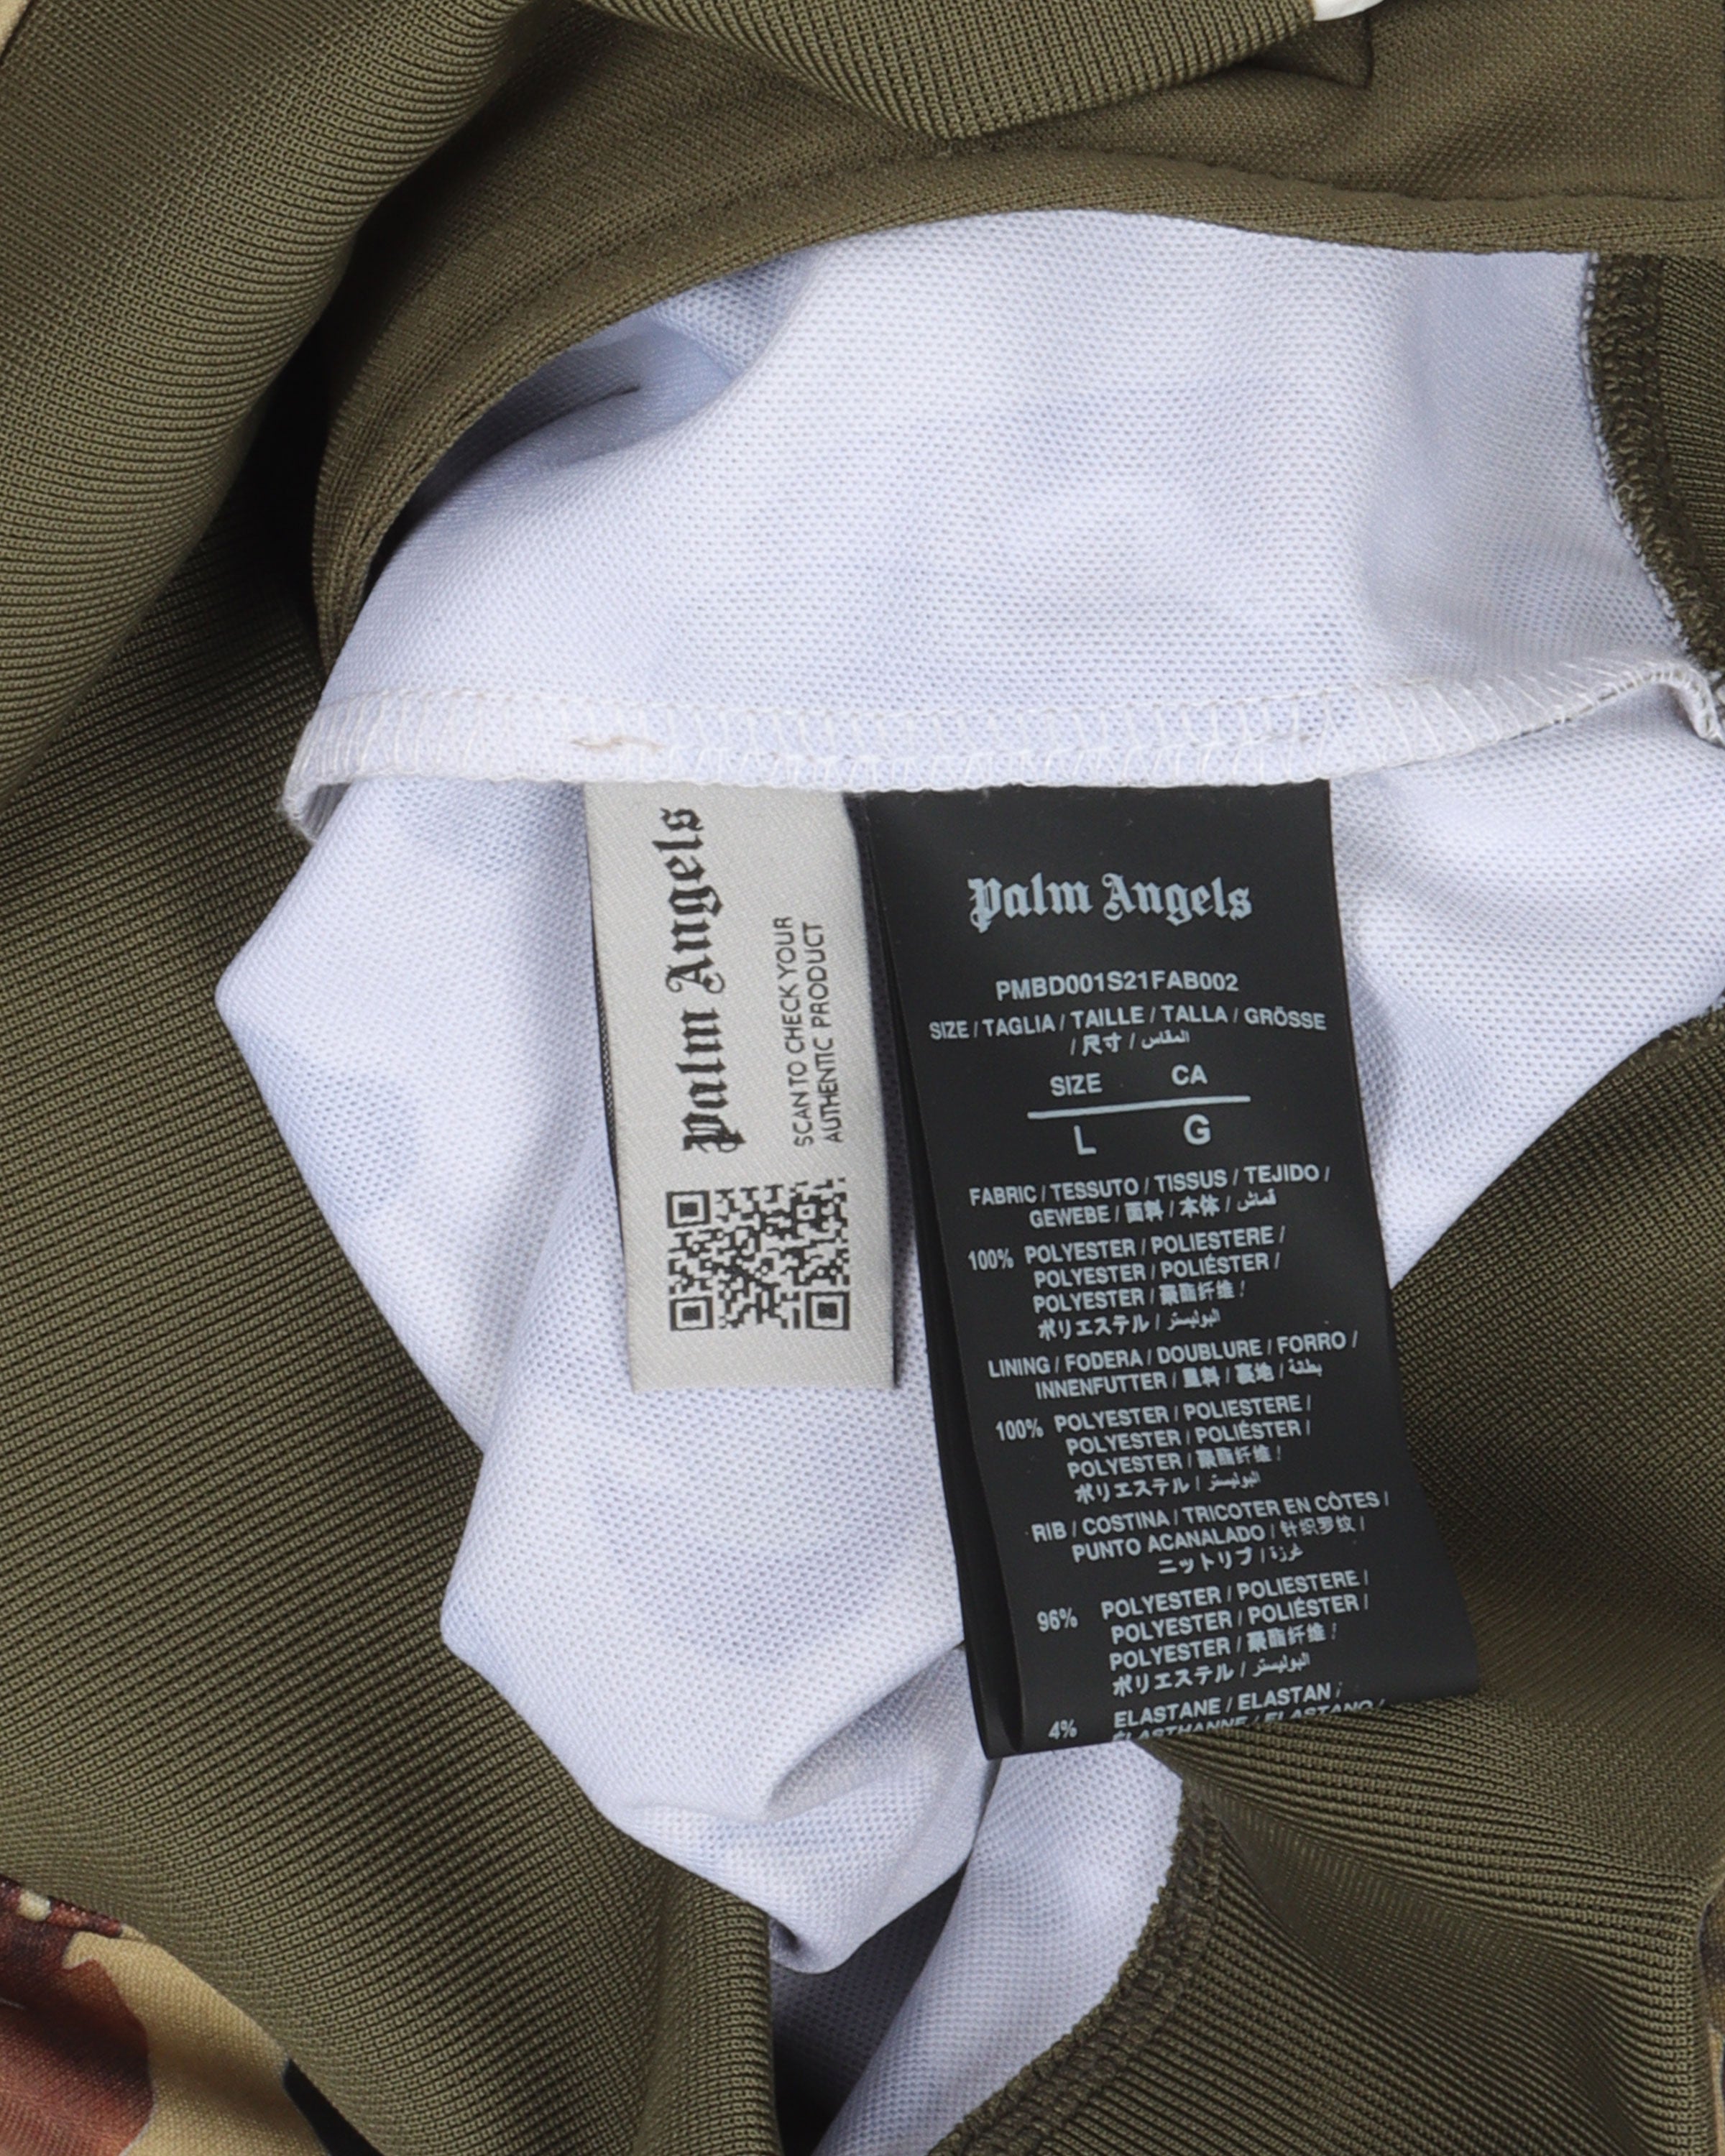 PALM ANGELS Night Camo Track Jacket - Clothing from Circle Fashion UK